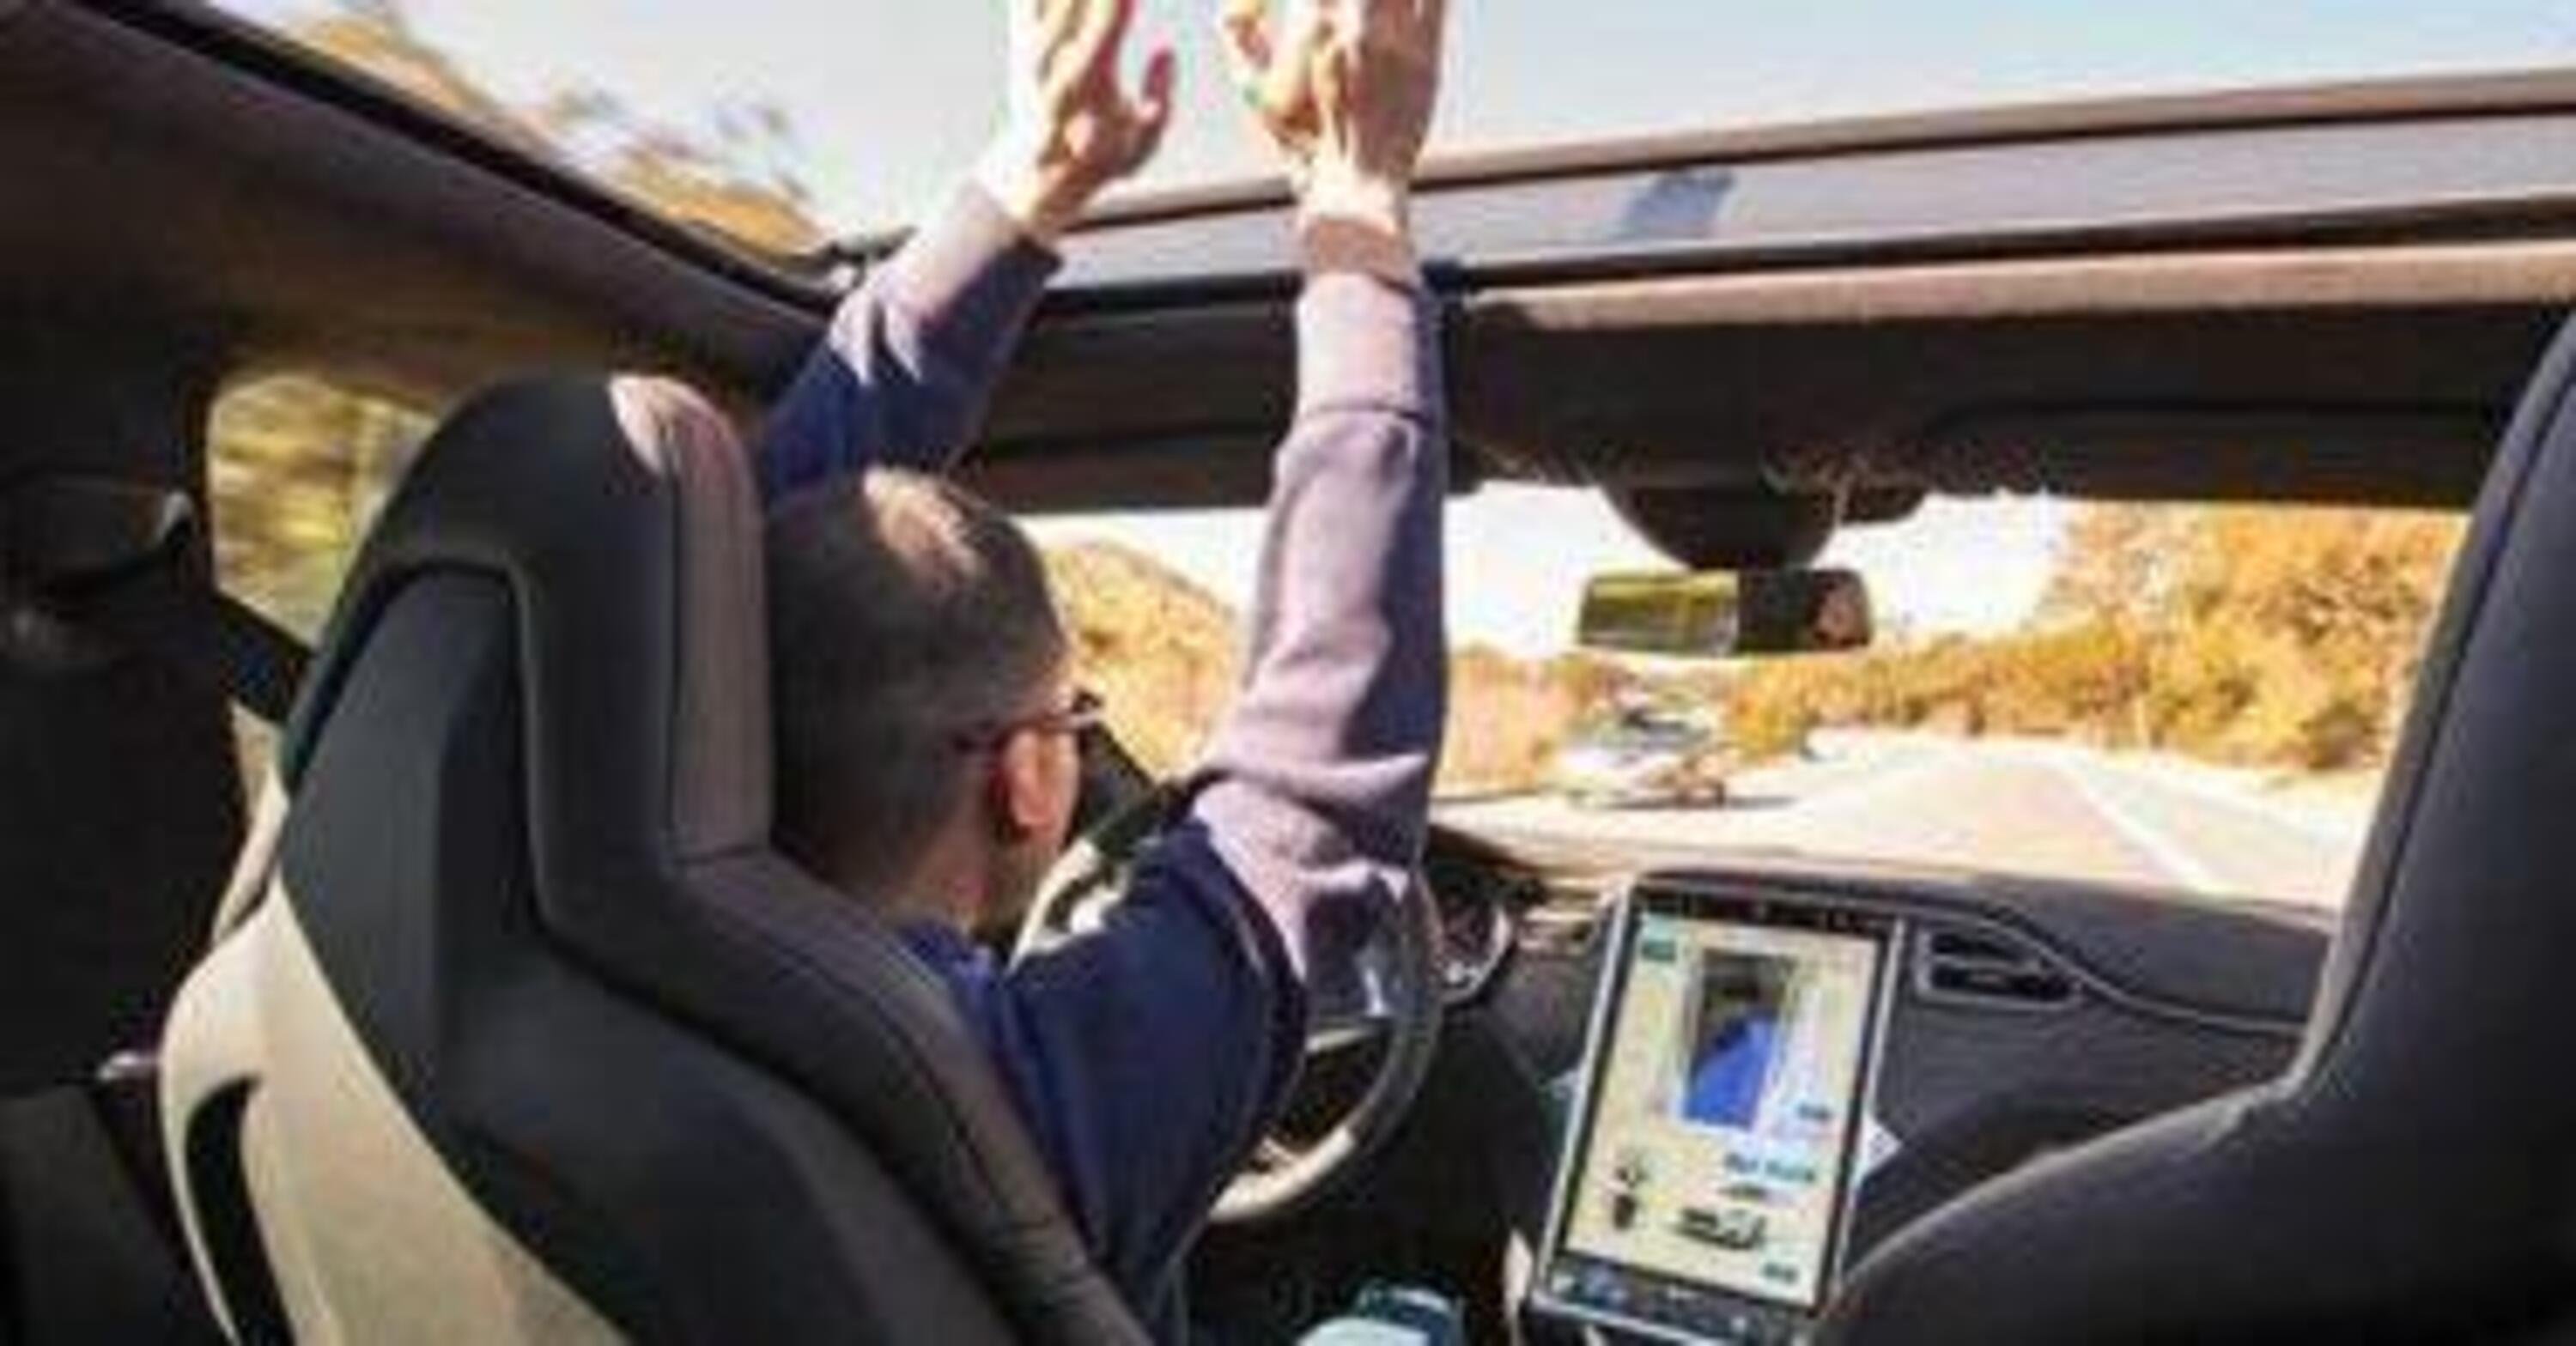 Tesla Full Self Driving parte ufficialmente oggi negli USA, per tutti quelli che lo chiedono